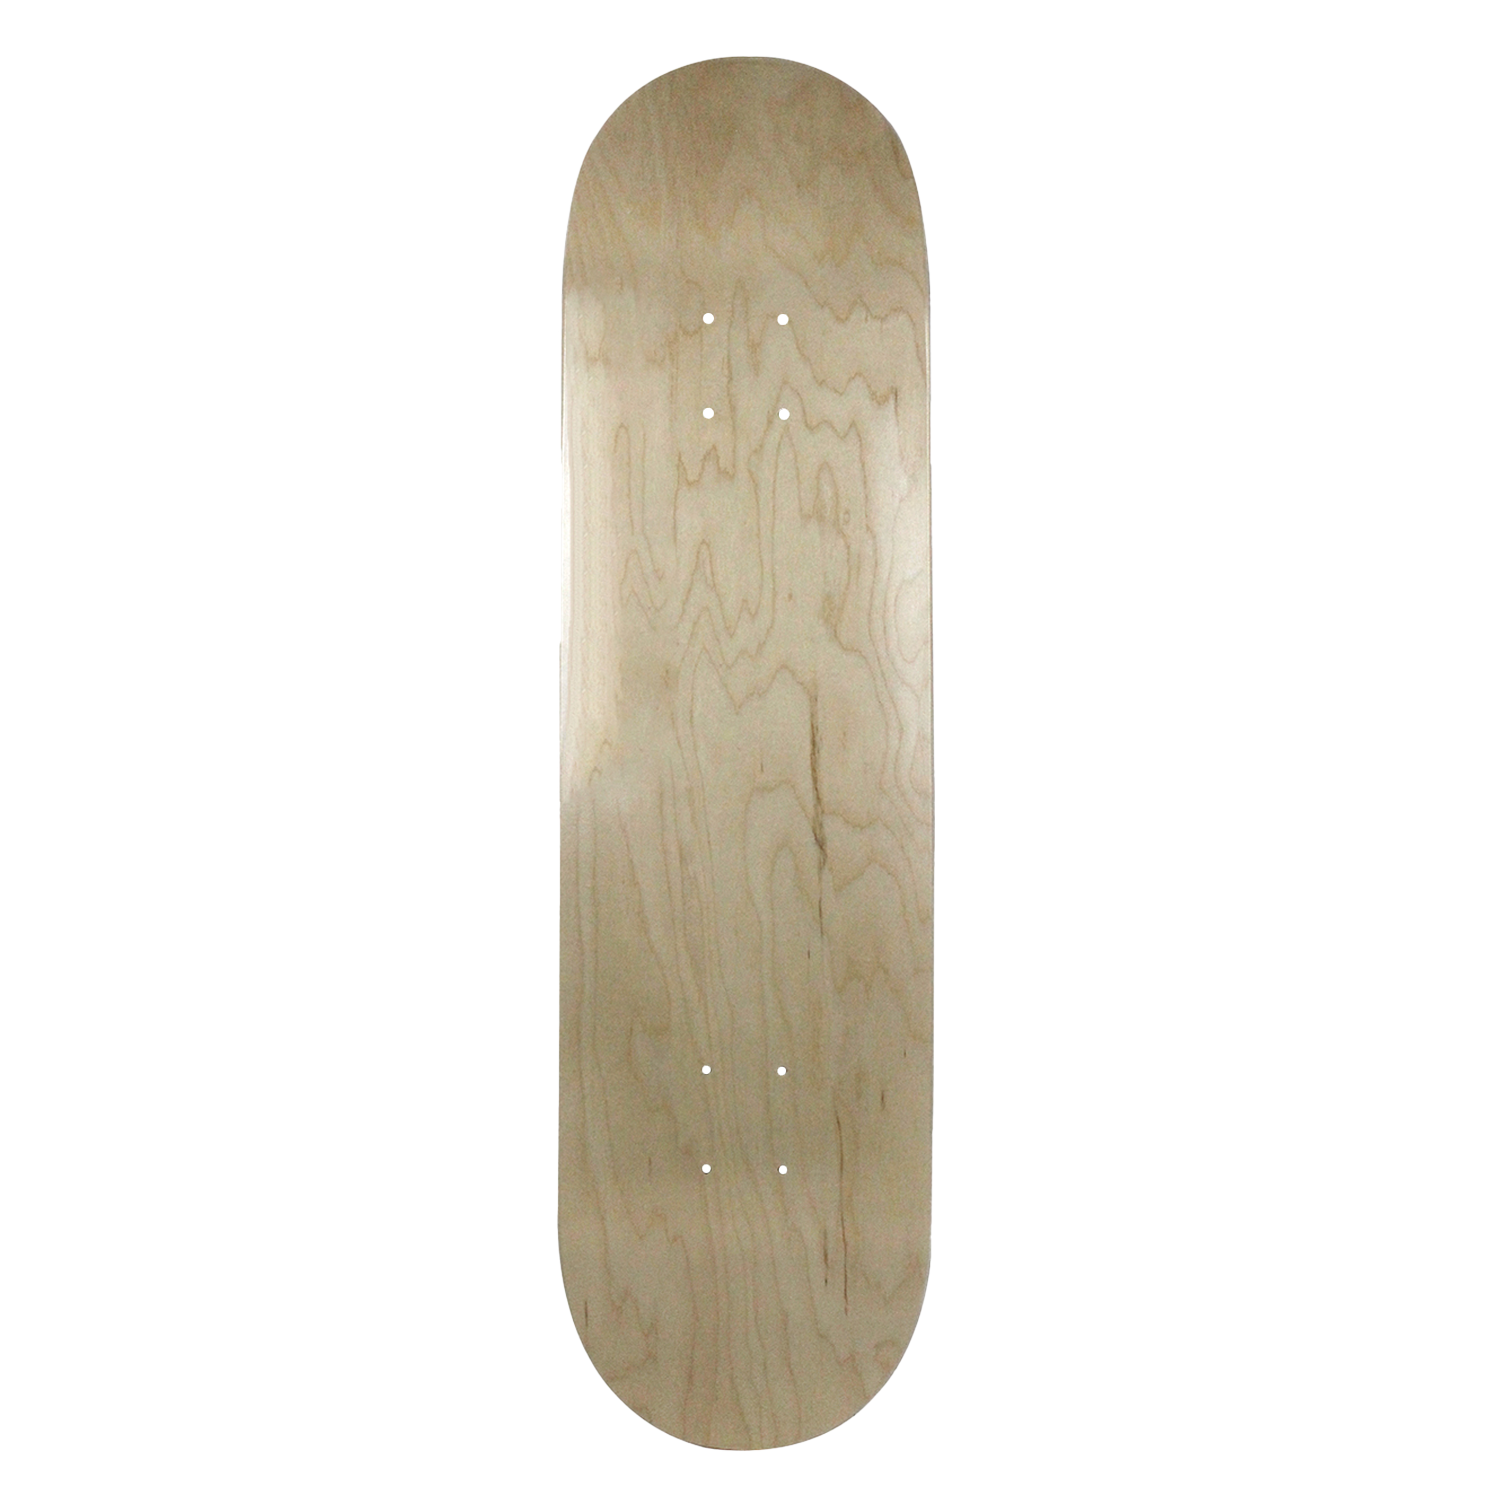 Moose Blank Skateboard Deck 7.75 Purple Skateboards